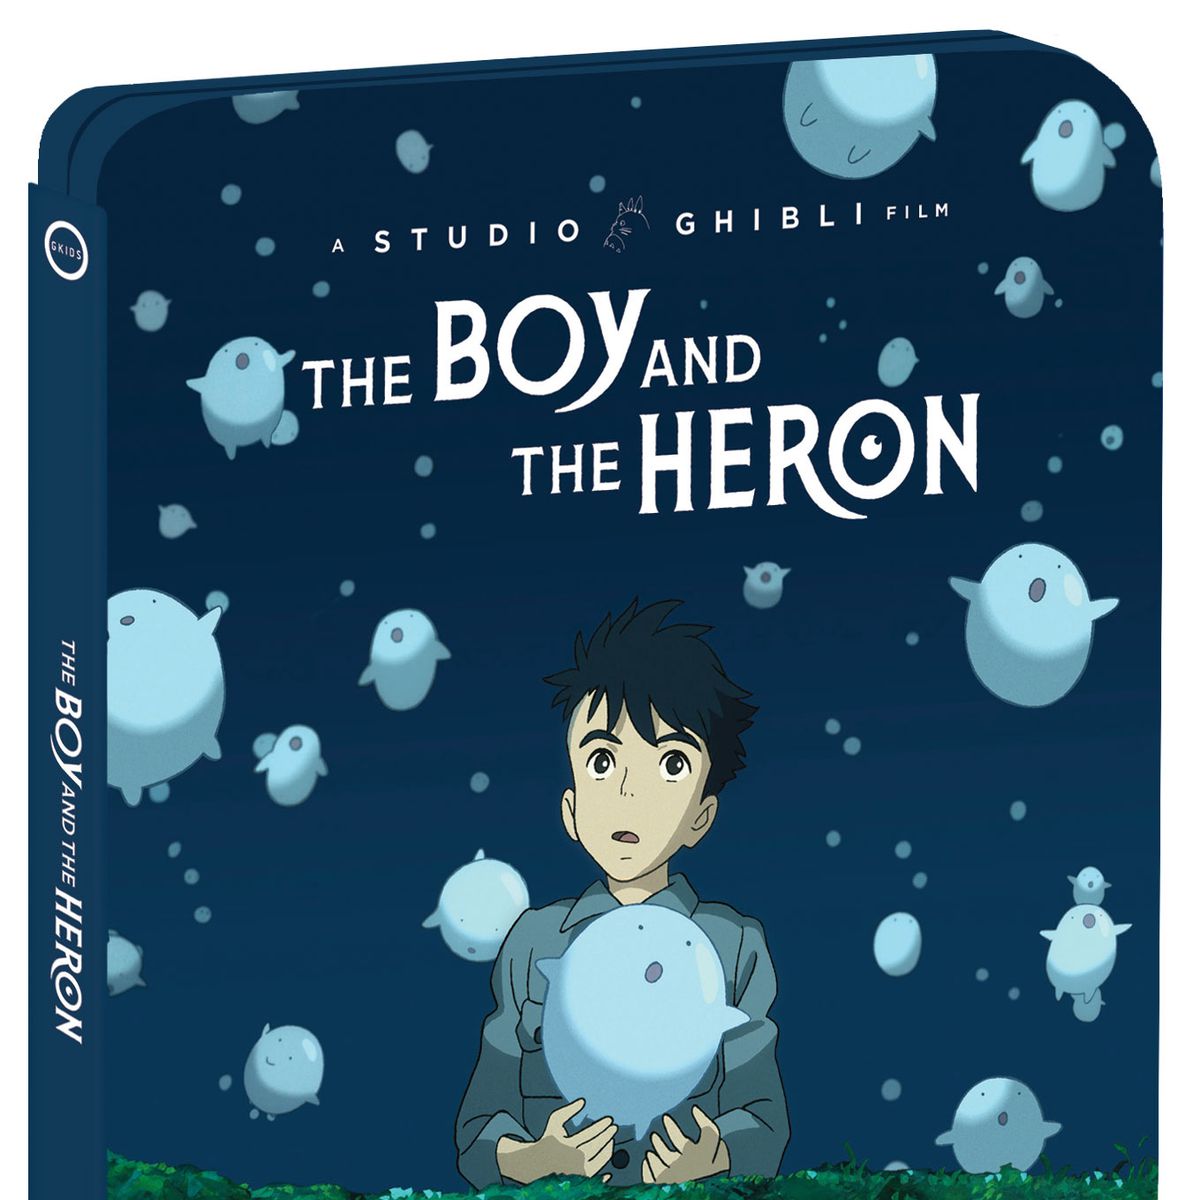 Mahito ser små sfäriska varelser sväva upp i luften med vördnad på omslaget till den begränsade upplagan The Boy and the Heron Steelbook.